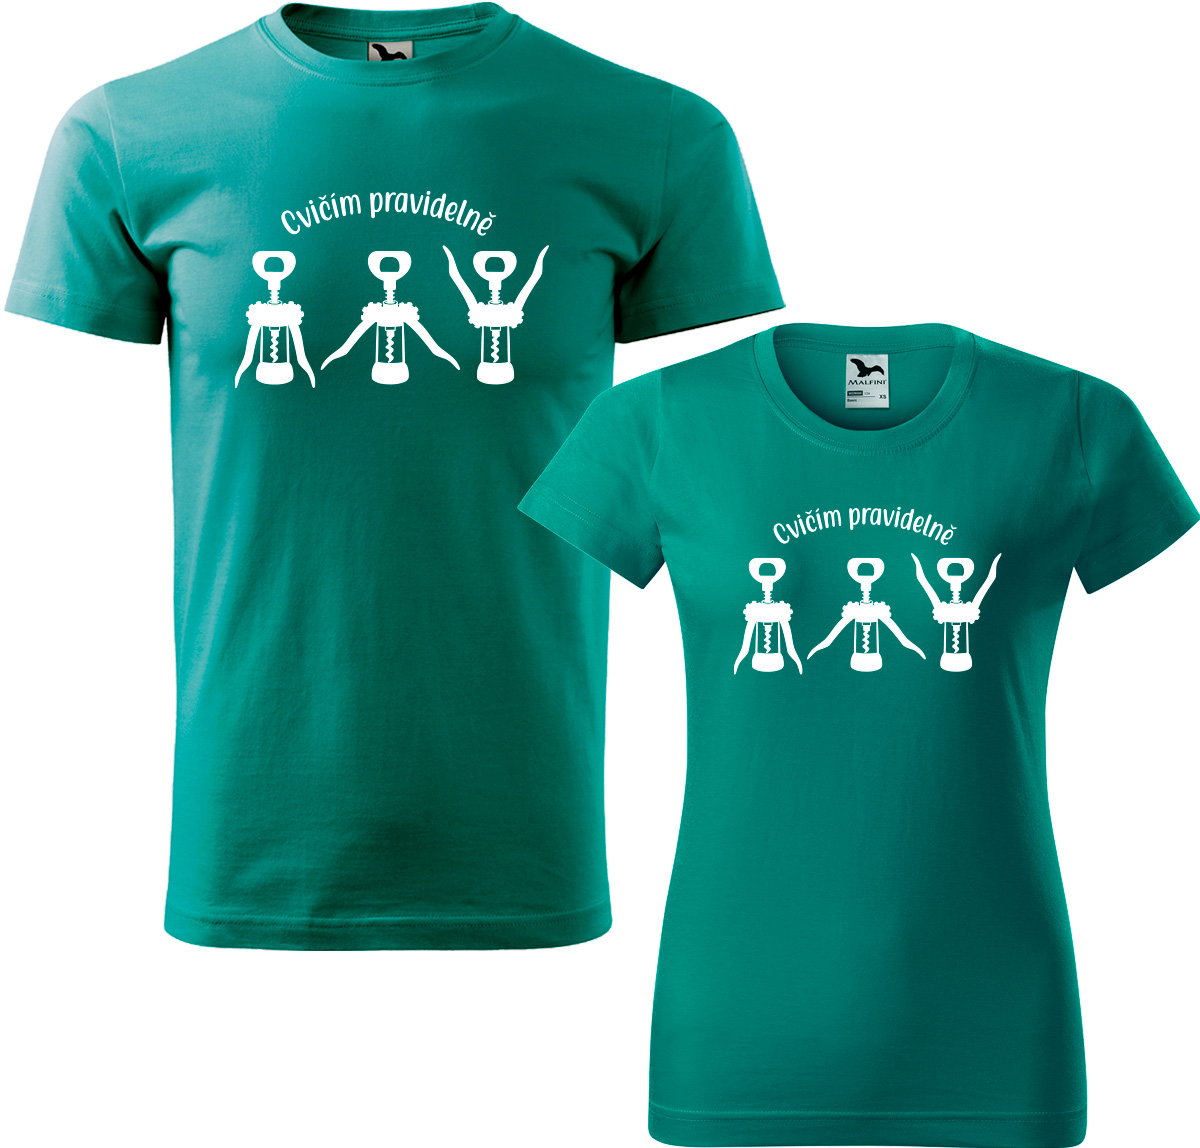 Trička pro páry - Cvičím pravidelně Barva: Emerald (19), Velikost dámské tričko: M, Velikost pánské tričko: M